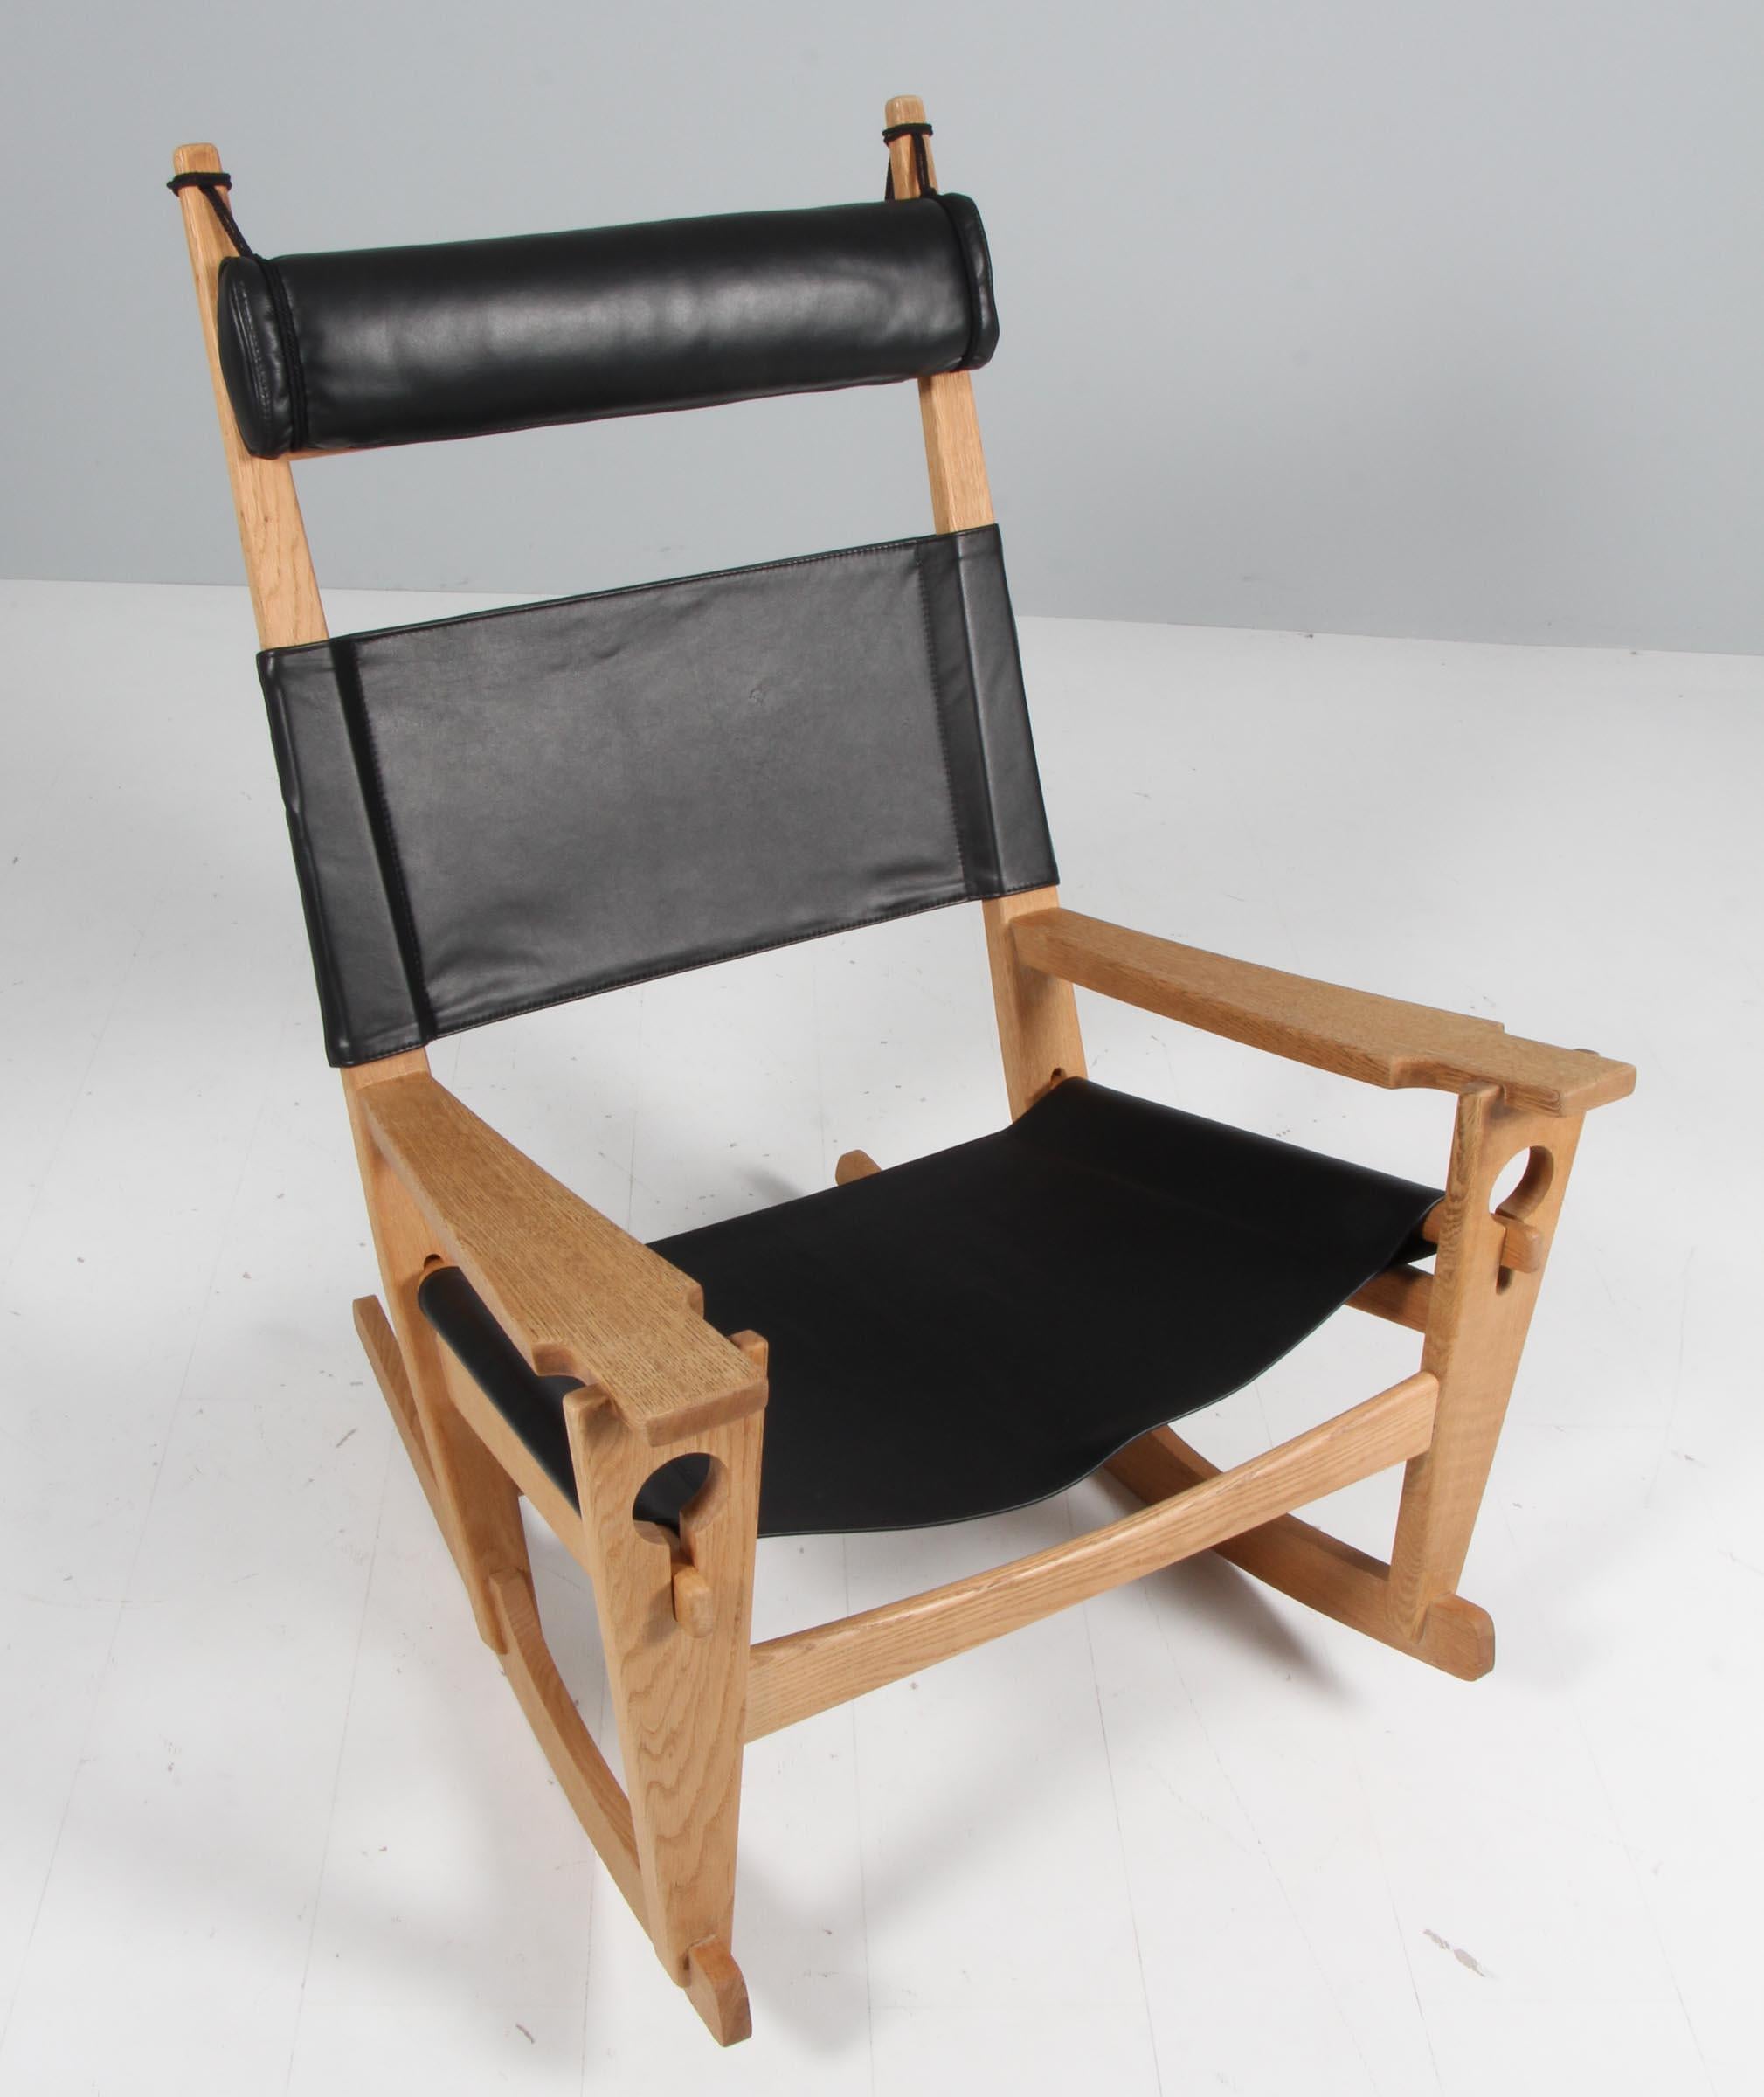 Chaise longue / rocking chair de Hans J. Wegner, nouvellement recouverte de cuir aniline noir.

Cadre en chêne traité au savon

Modèle Nøglehullet, fabriqué par GETAMA.